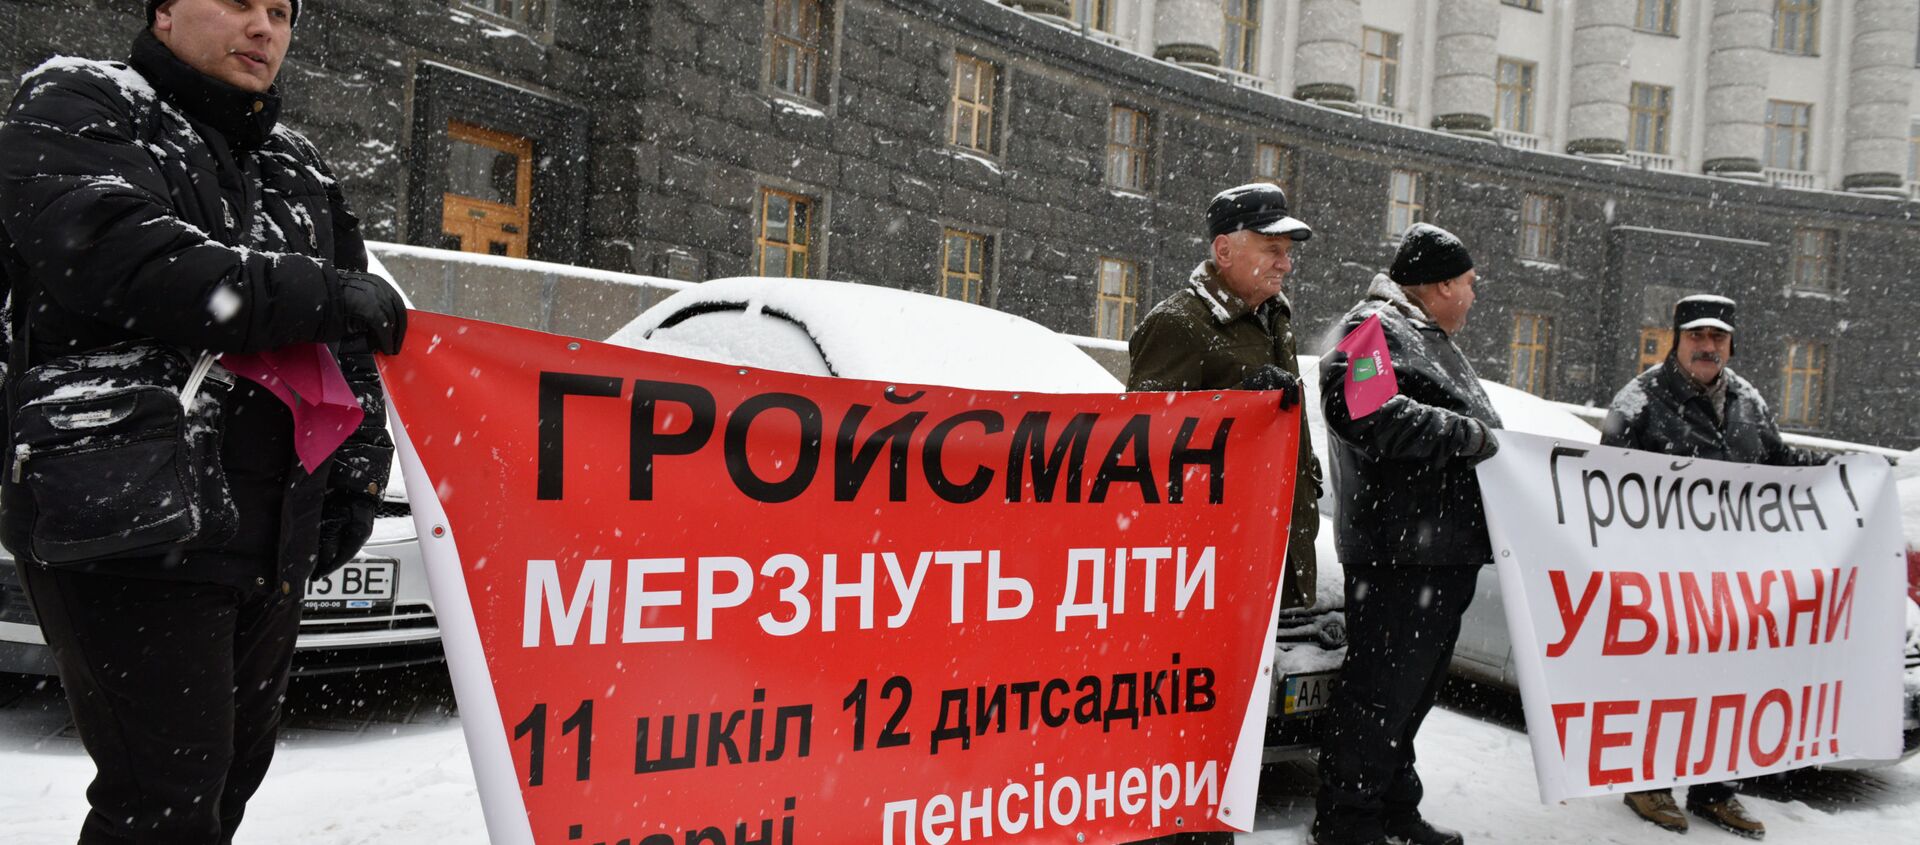 Жители Украины проводят пикет около здания кабинета министров в Киеве с требованием включить отопление в городах страны - Sputnik Грузия, 1920, 21.01.2021